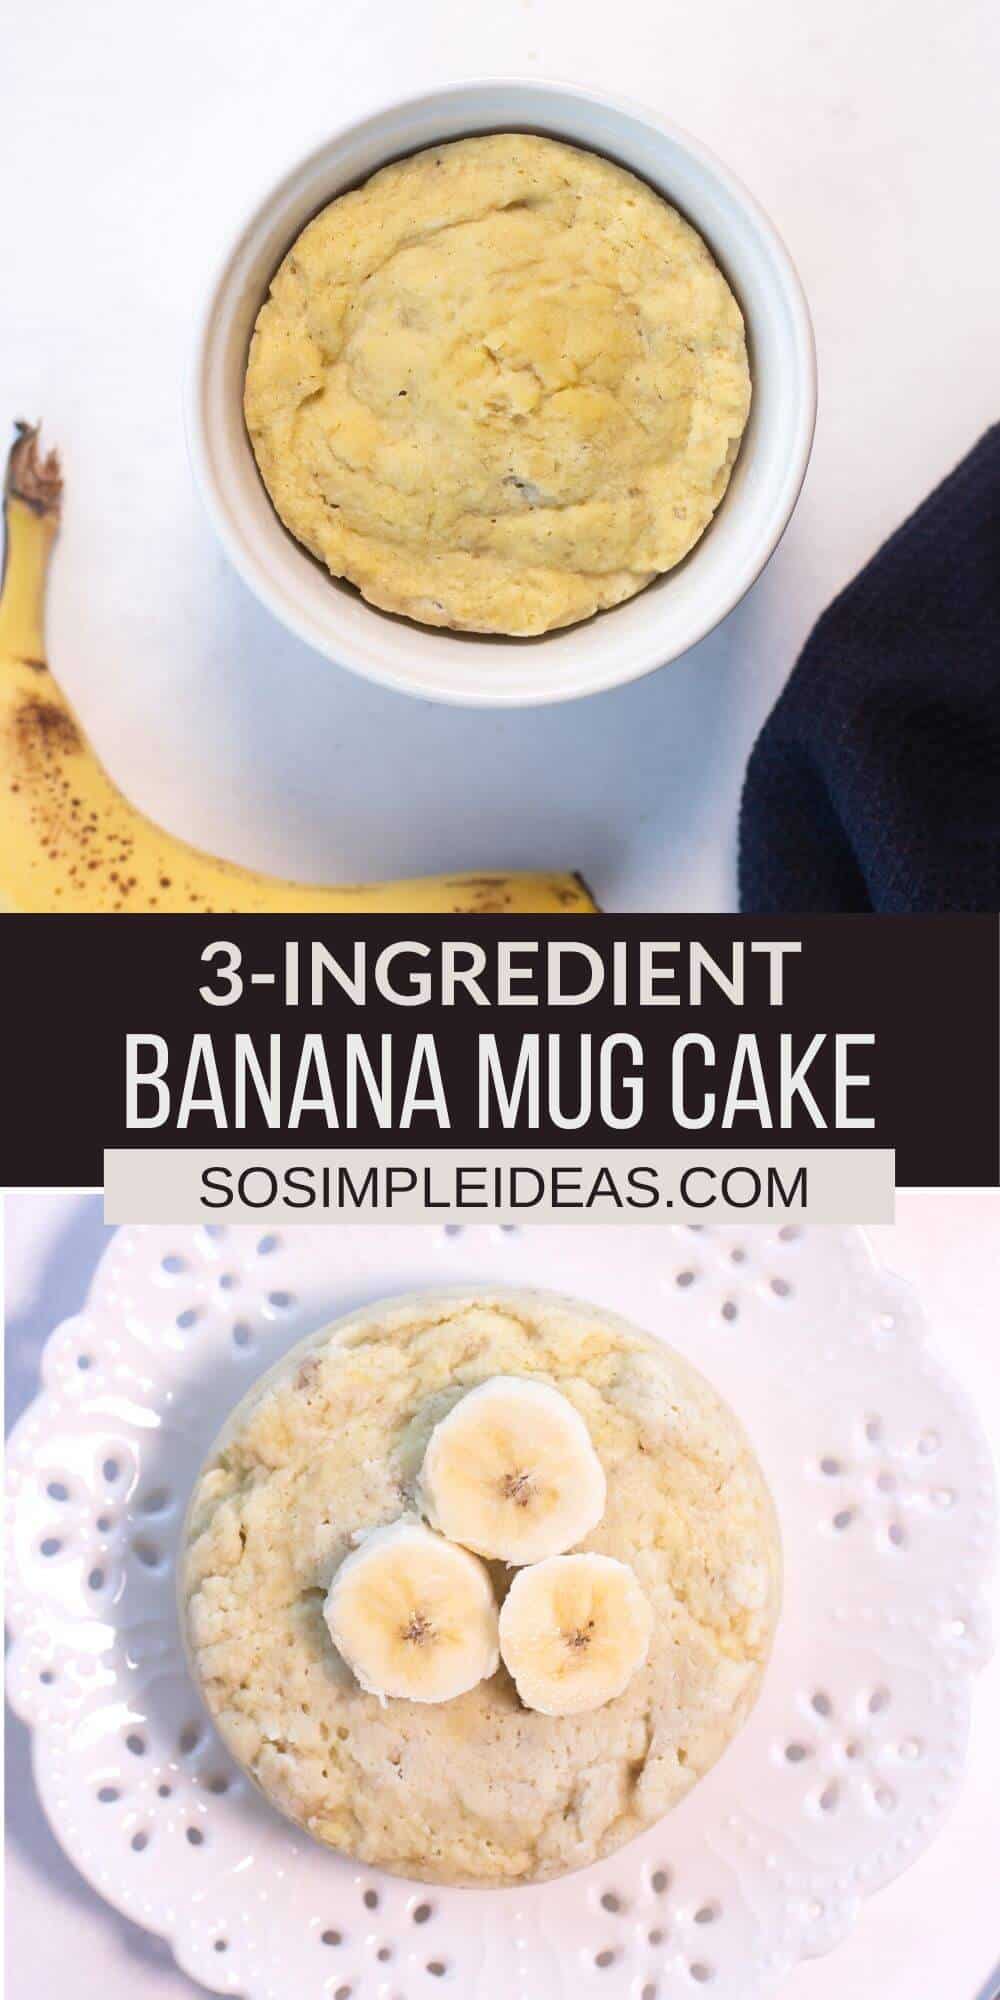 3 ingredient banana mug cake pinterest image.